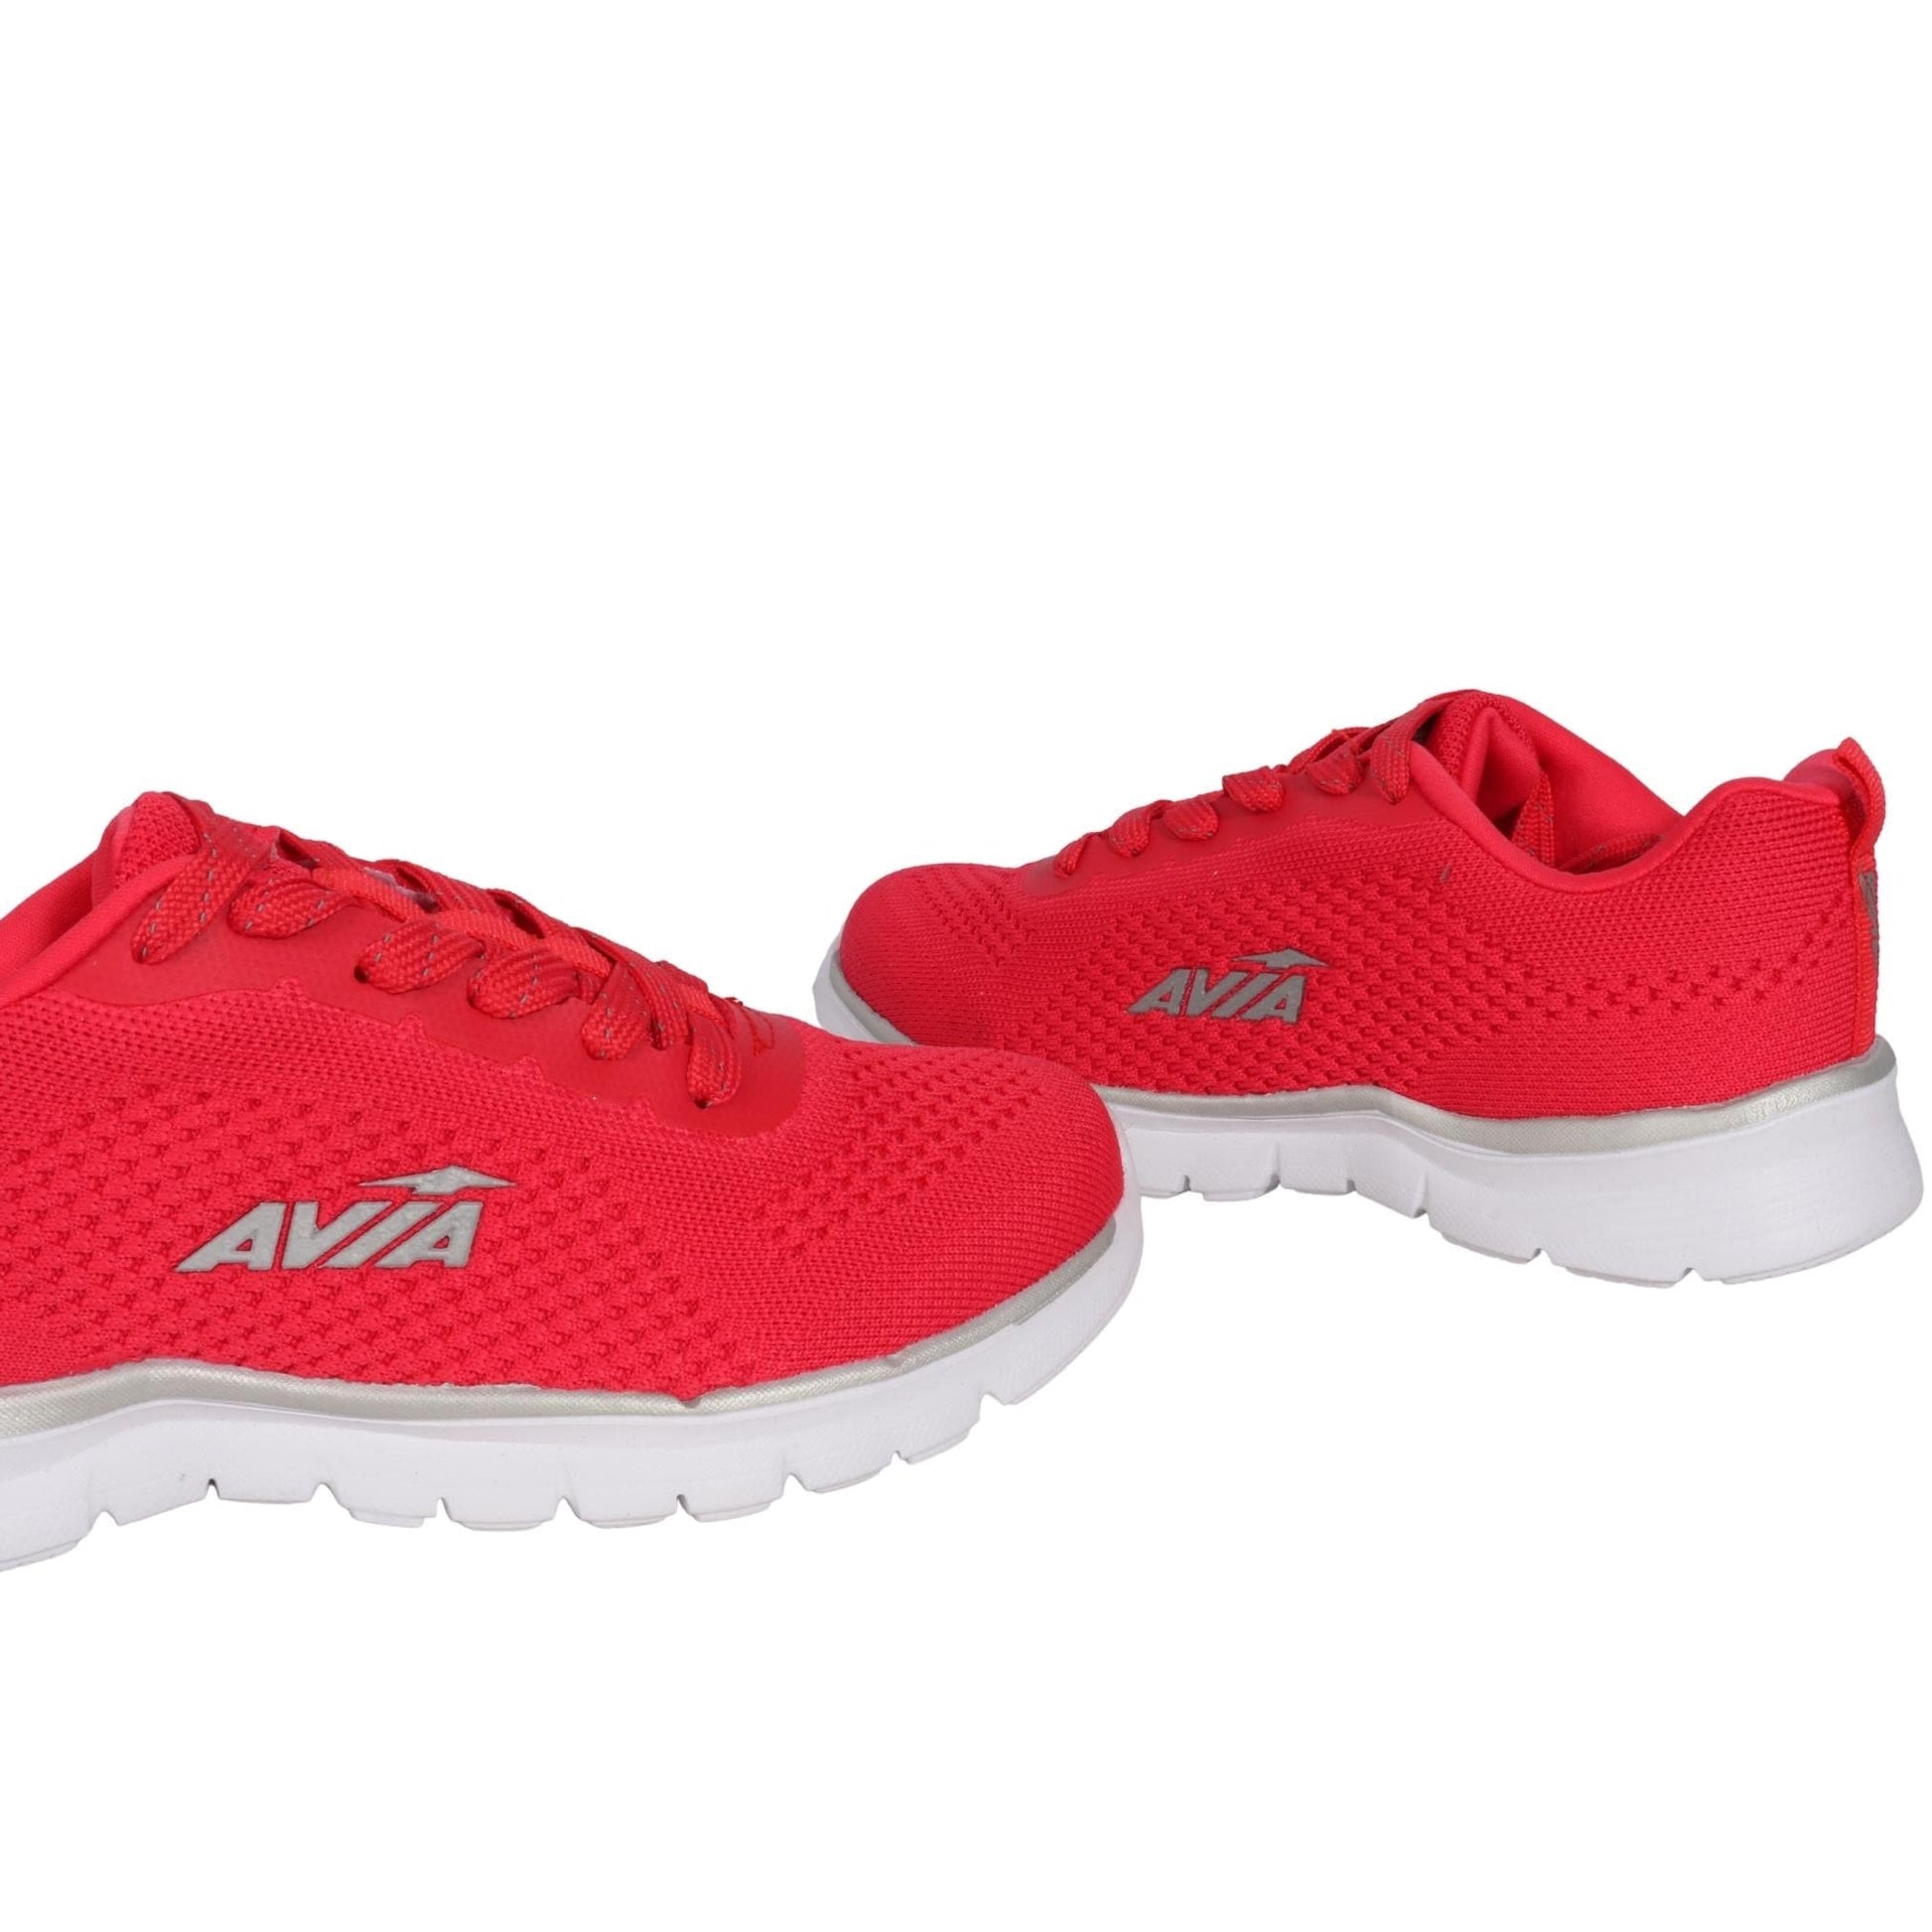 Avia Running Shoes